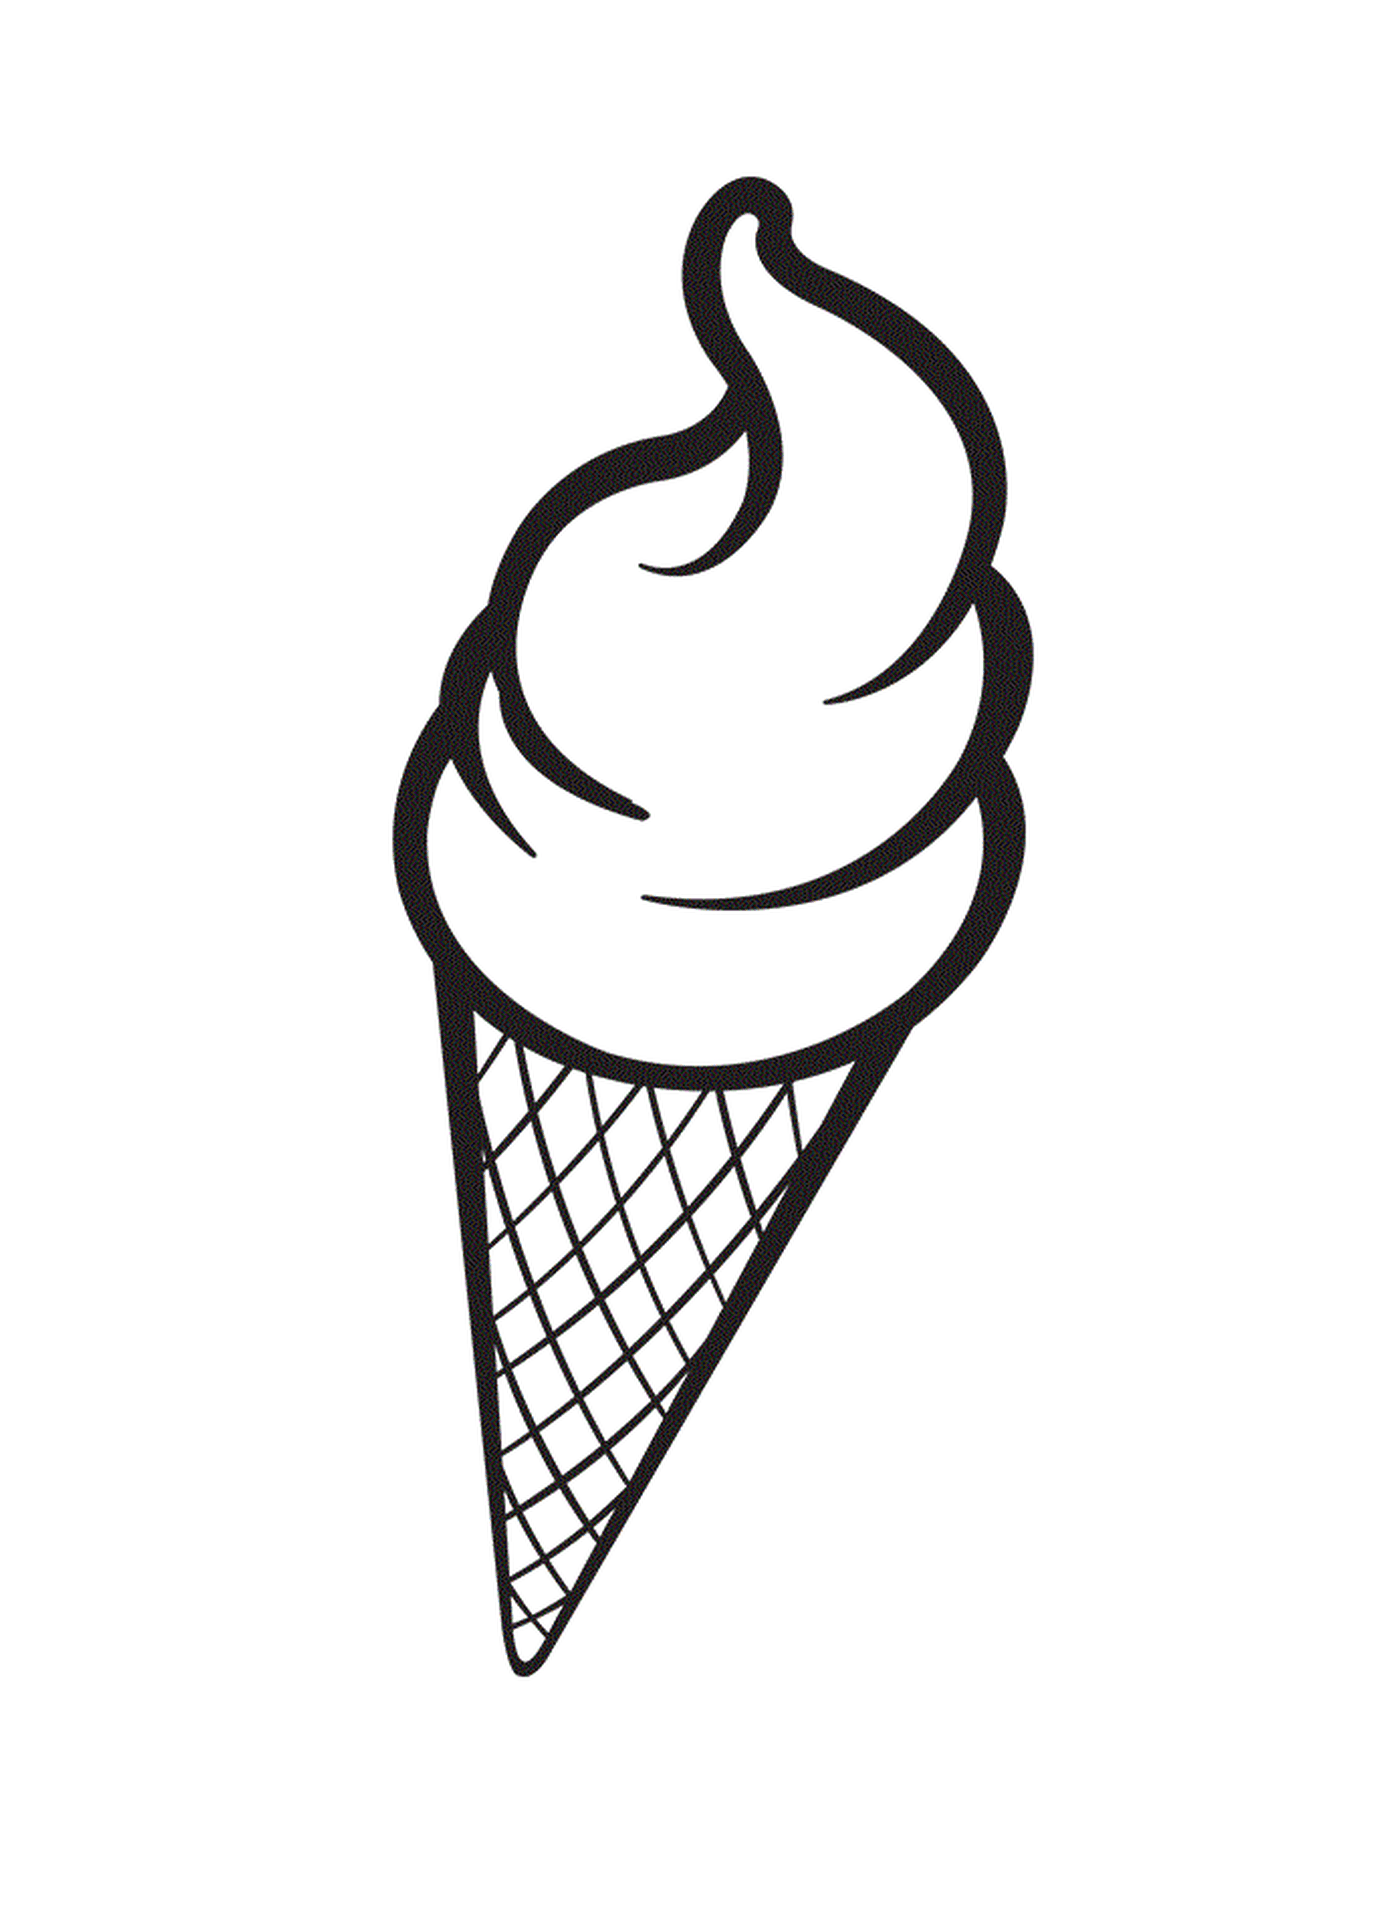  Delizioso gelato per le vacanze estive 